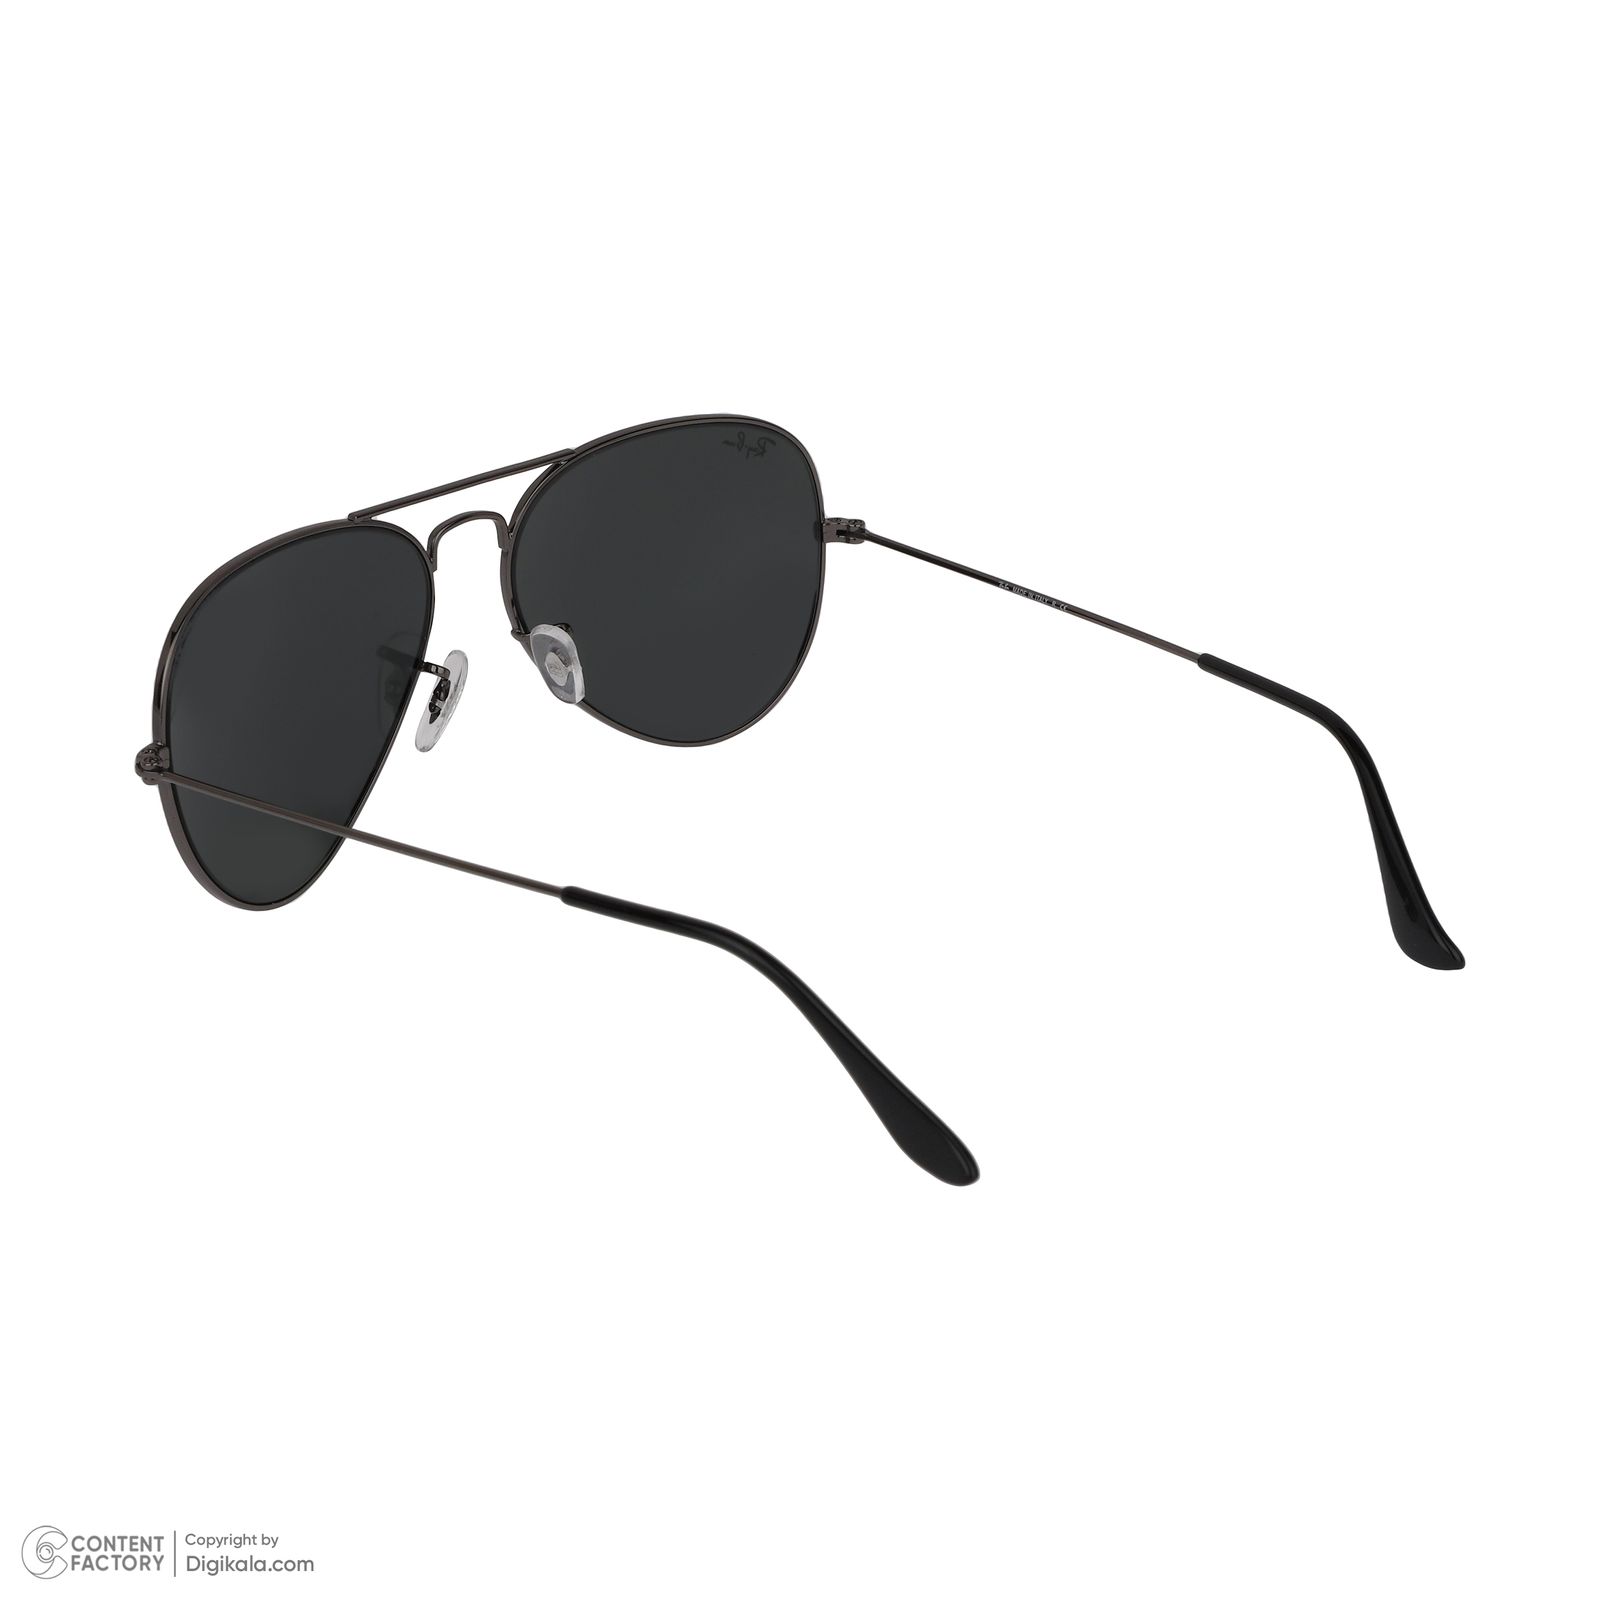 عینک آفتابی ری بن مدل RB3025-004/62 -  - 4